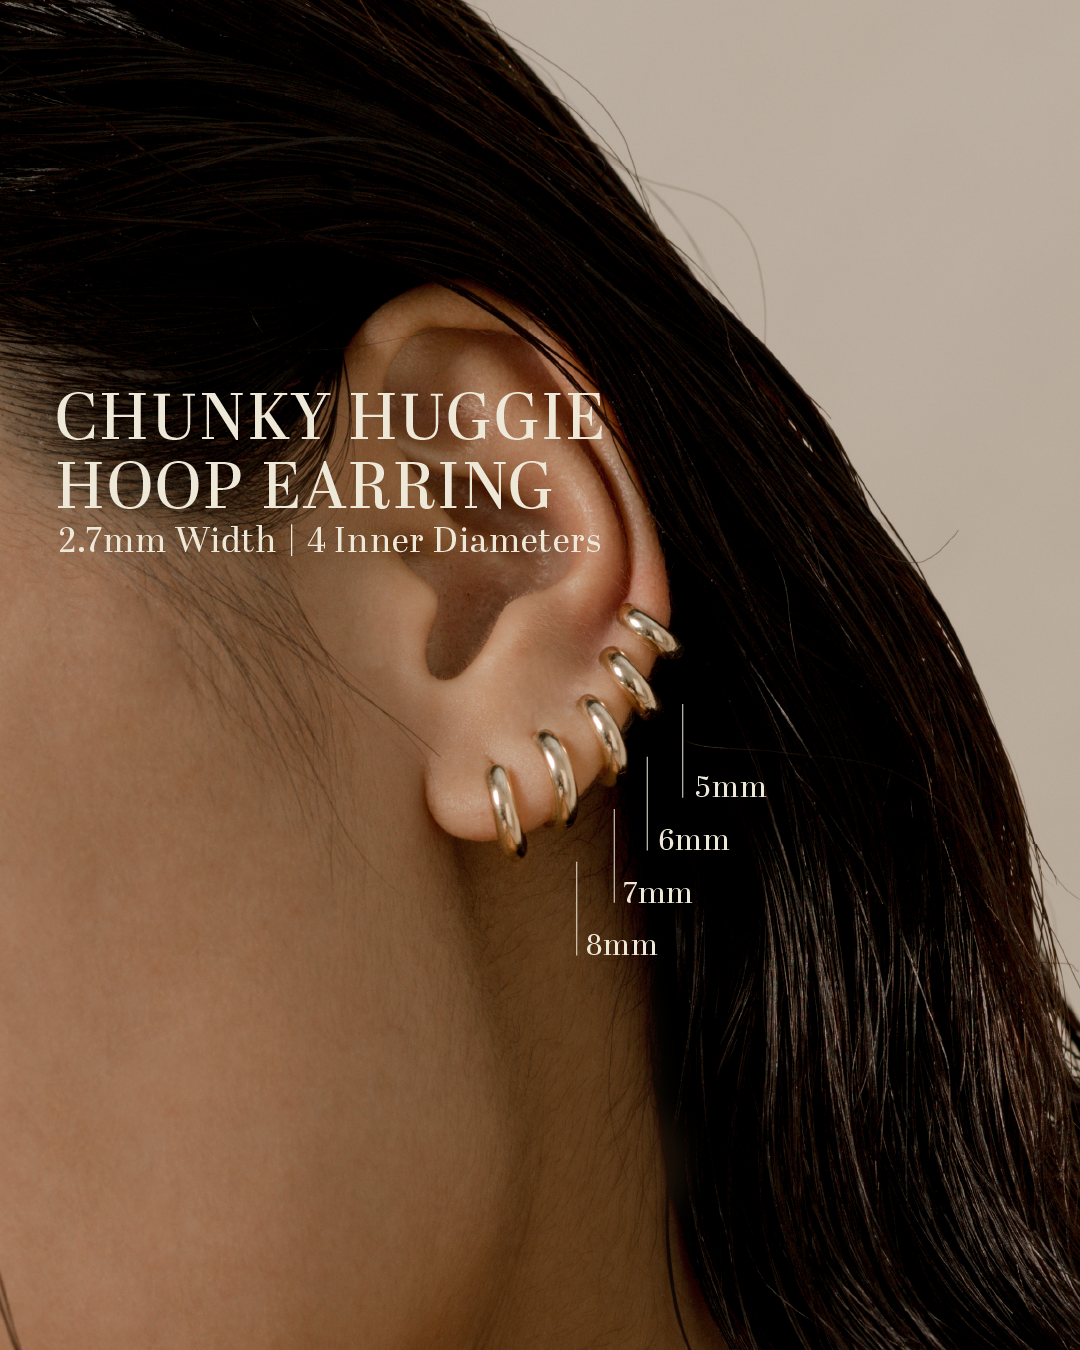 Chunky Huggie Hoop Earring - 8mm